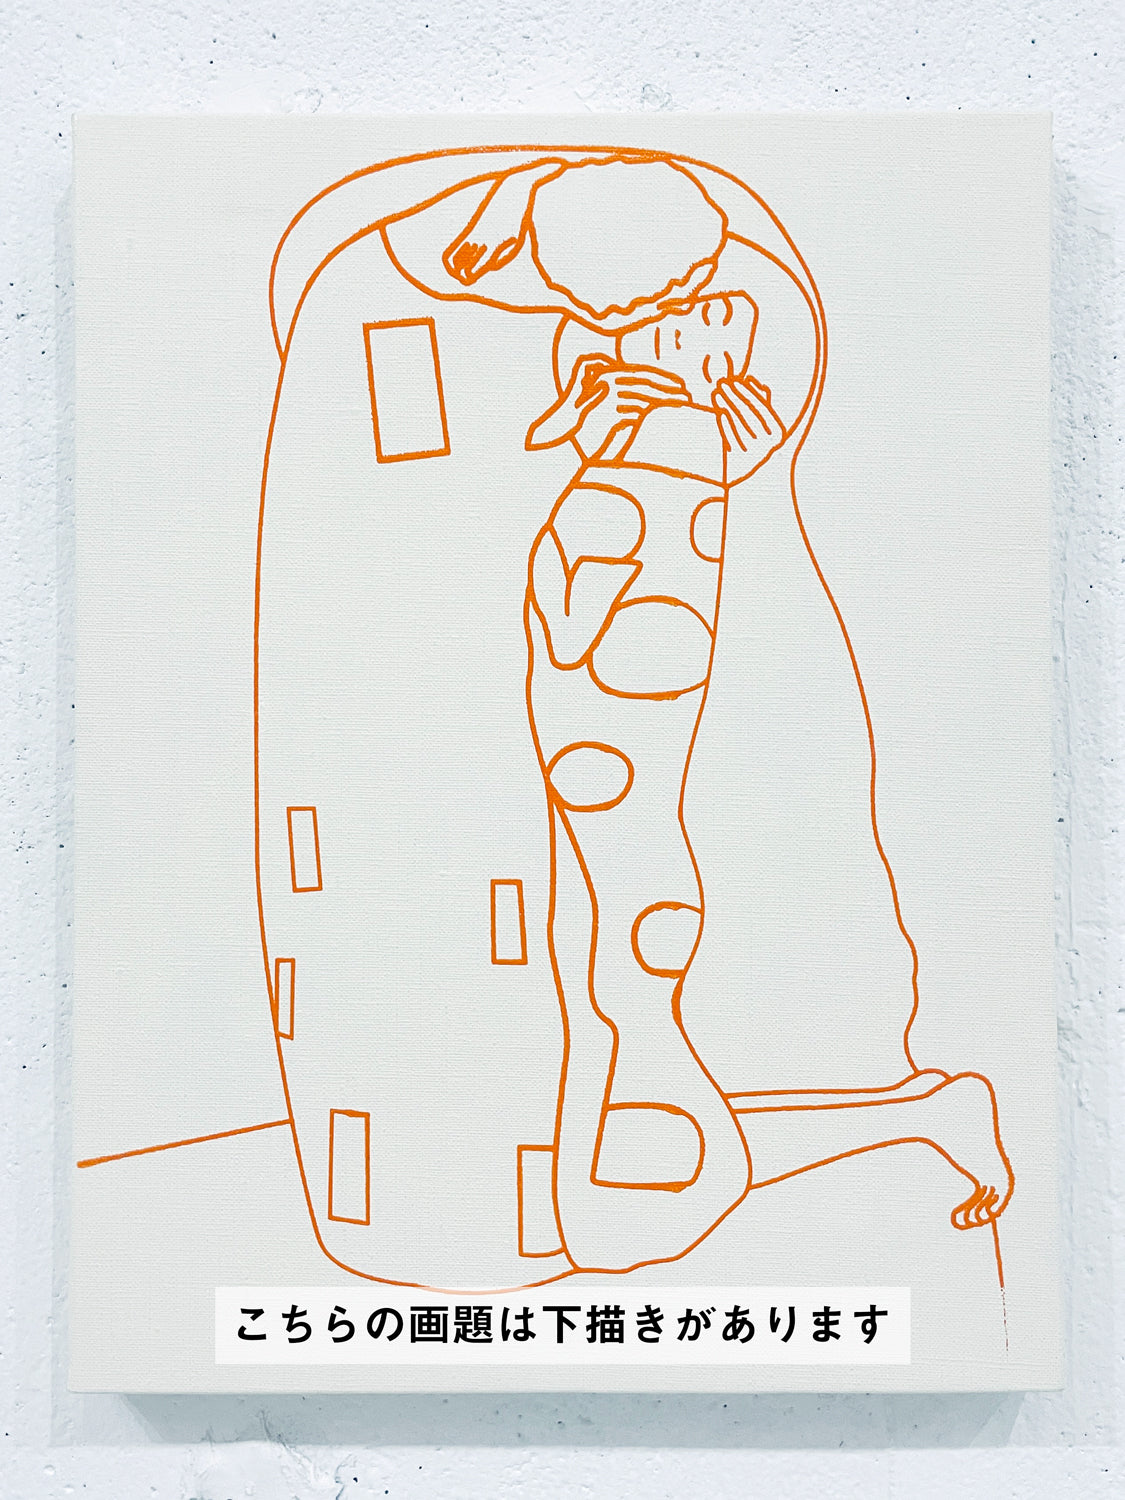 06月16日 (日) 18:00-21:00 | 日本橋 | グスタフ・クリムト | 接吻 *下描きあり (The Kiss by Gustav Klimt *canvas drafted at Nihon-bashi)